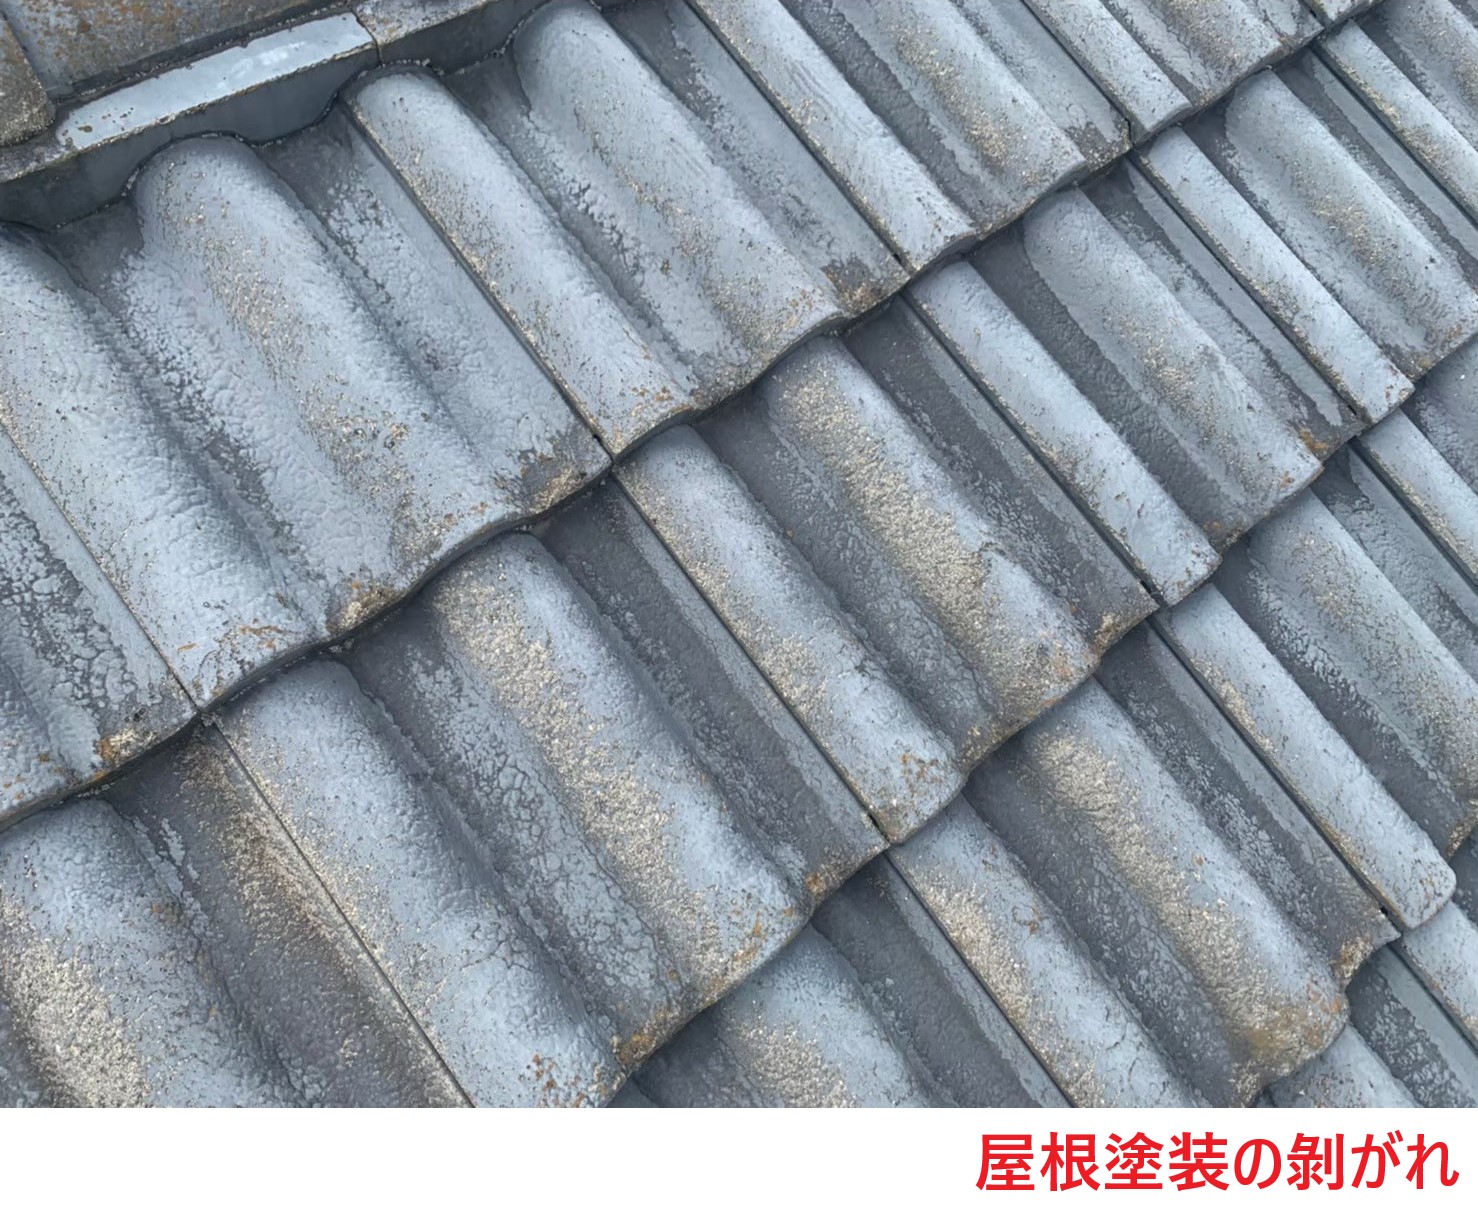 滋賀県草津市野路でセメント瓦の屋根塗装の剝がれがあり点検してほしいとのご依頼